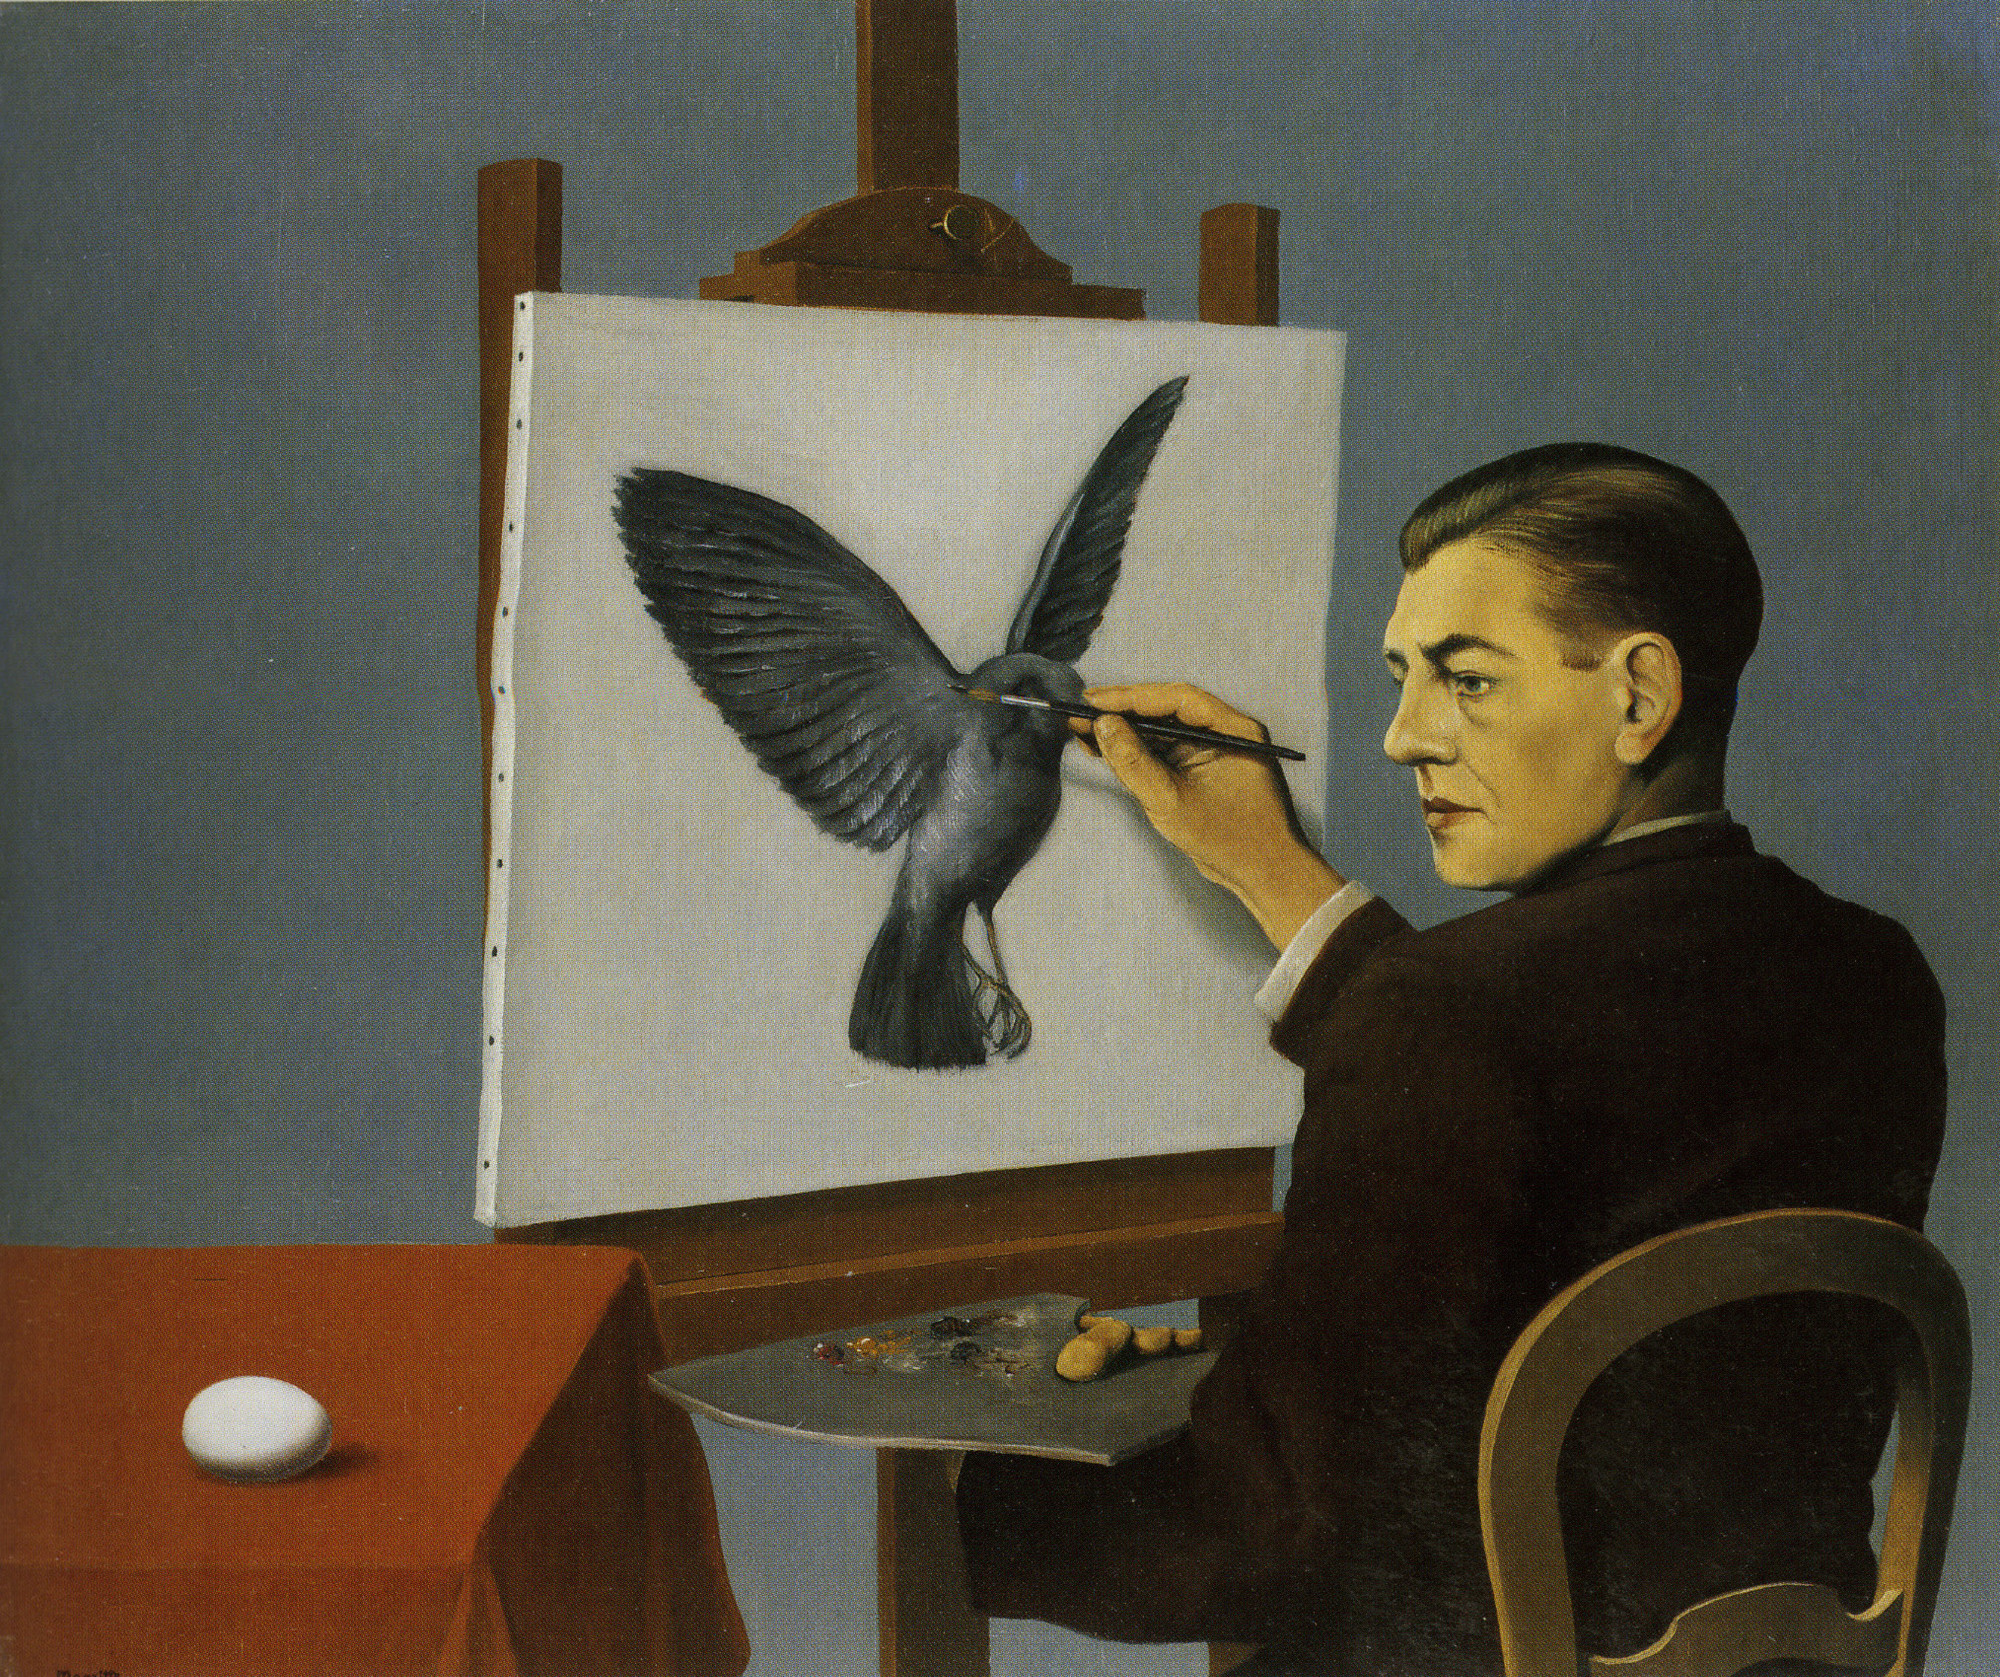 René Magritte. _La Clairvoyance (Clairvoyance)._ Brussels, 1936